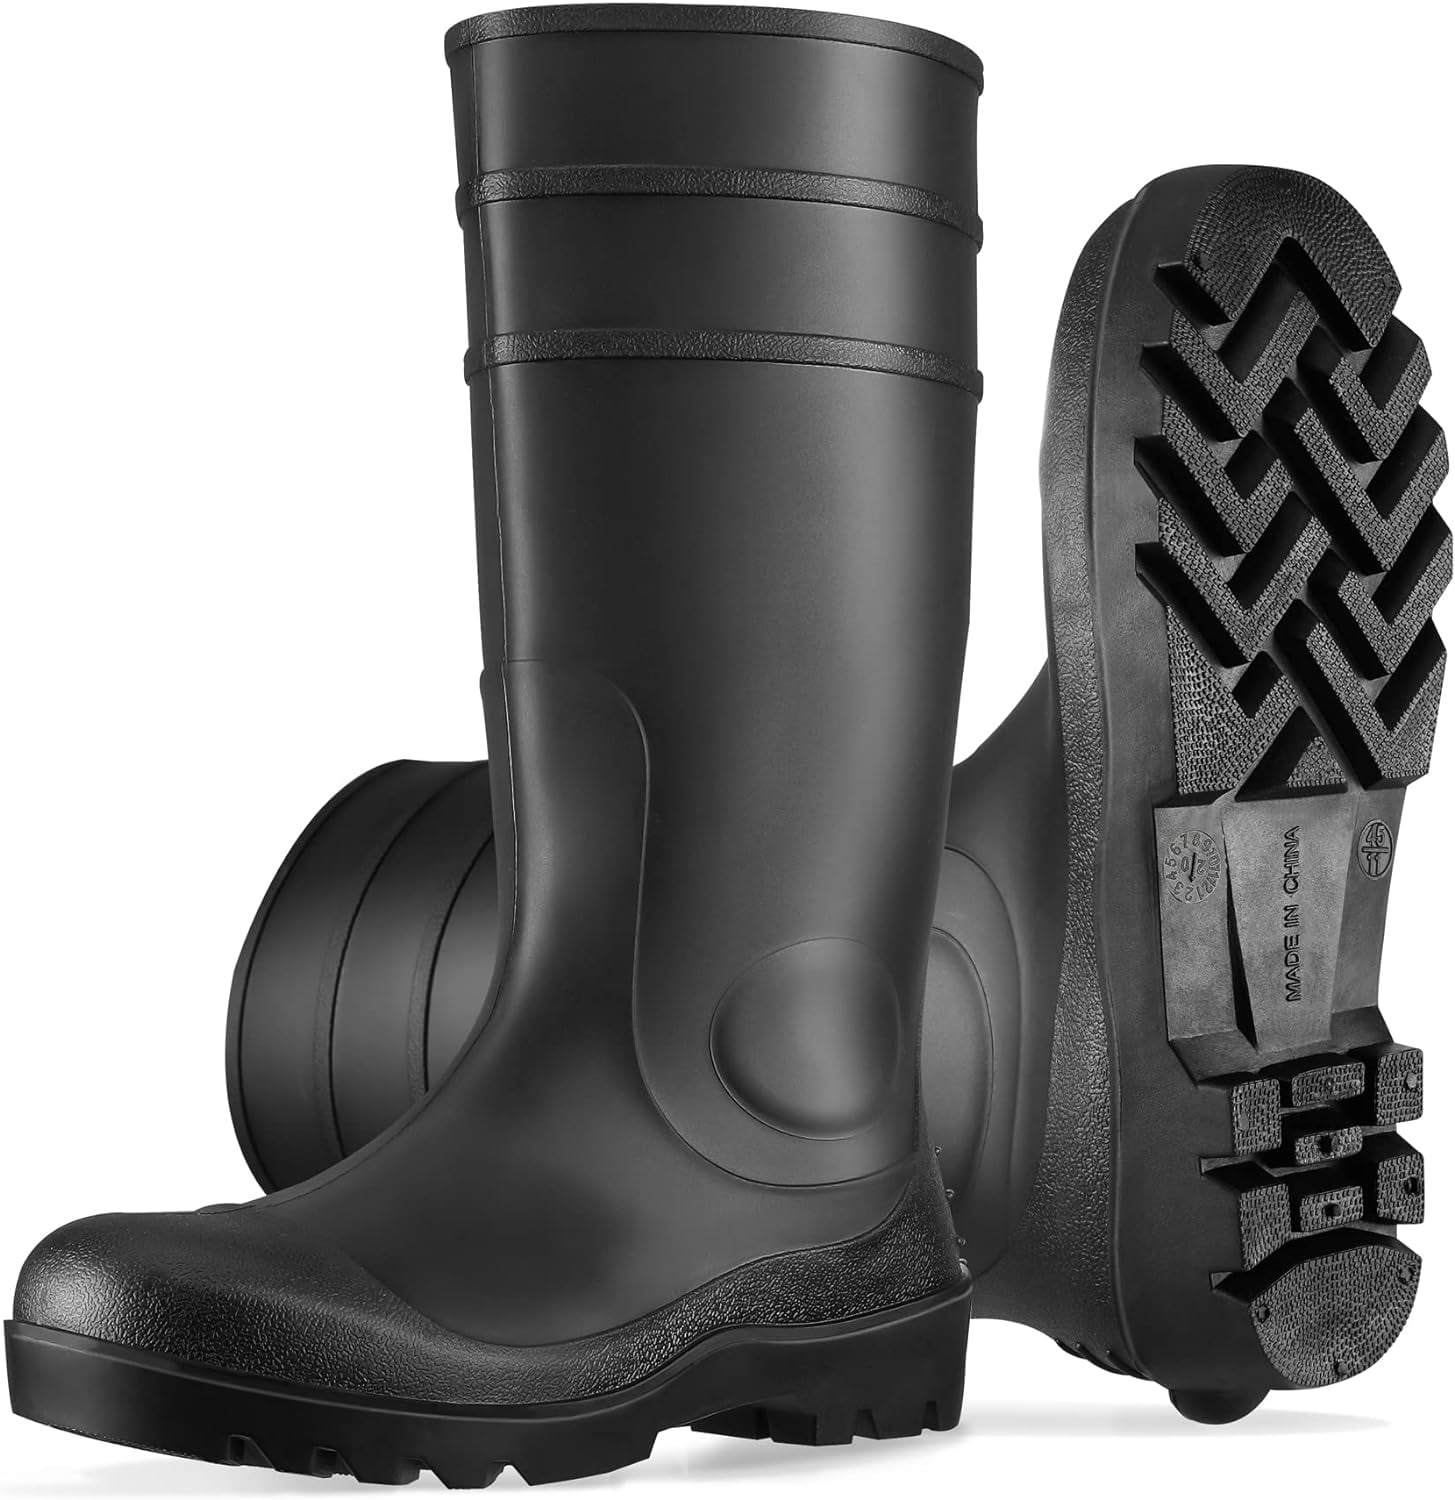 Goldblatt 100% Waterproof Rubber Boots, All-Purpose Galoshes, Mud/Muck ...